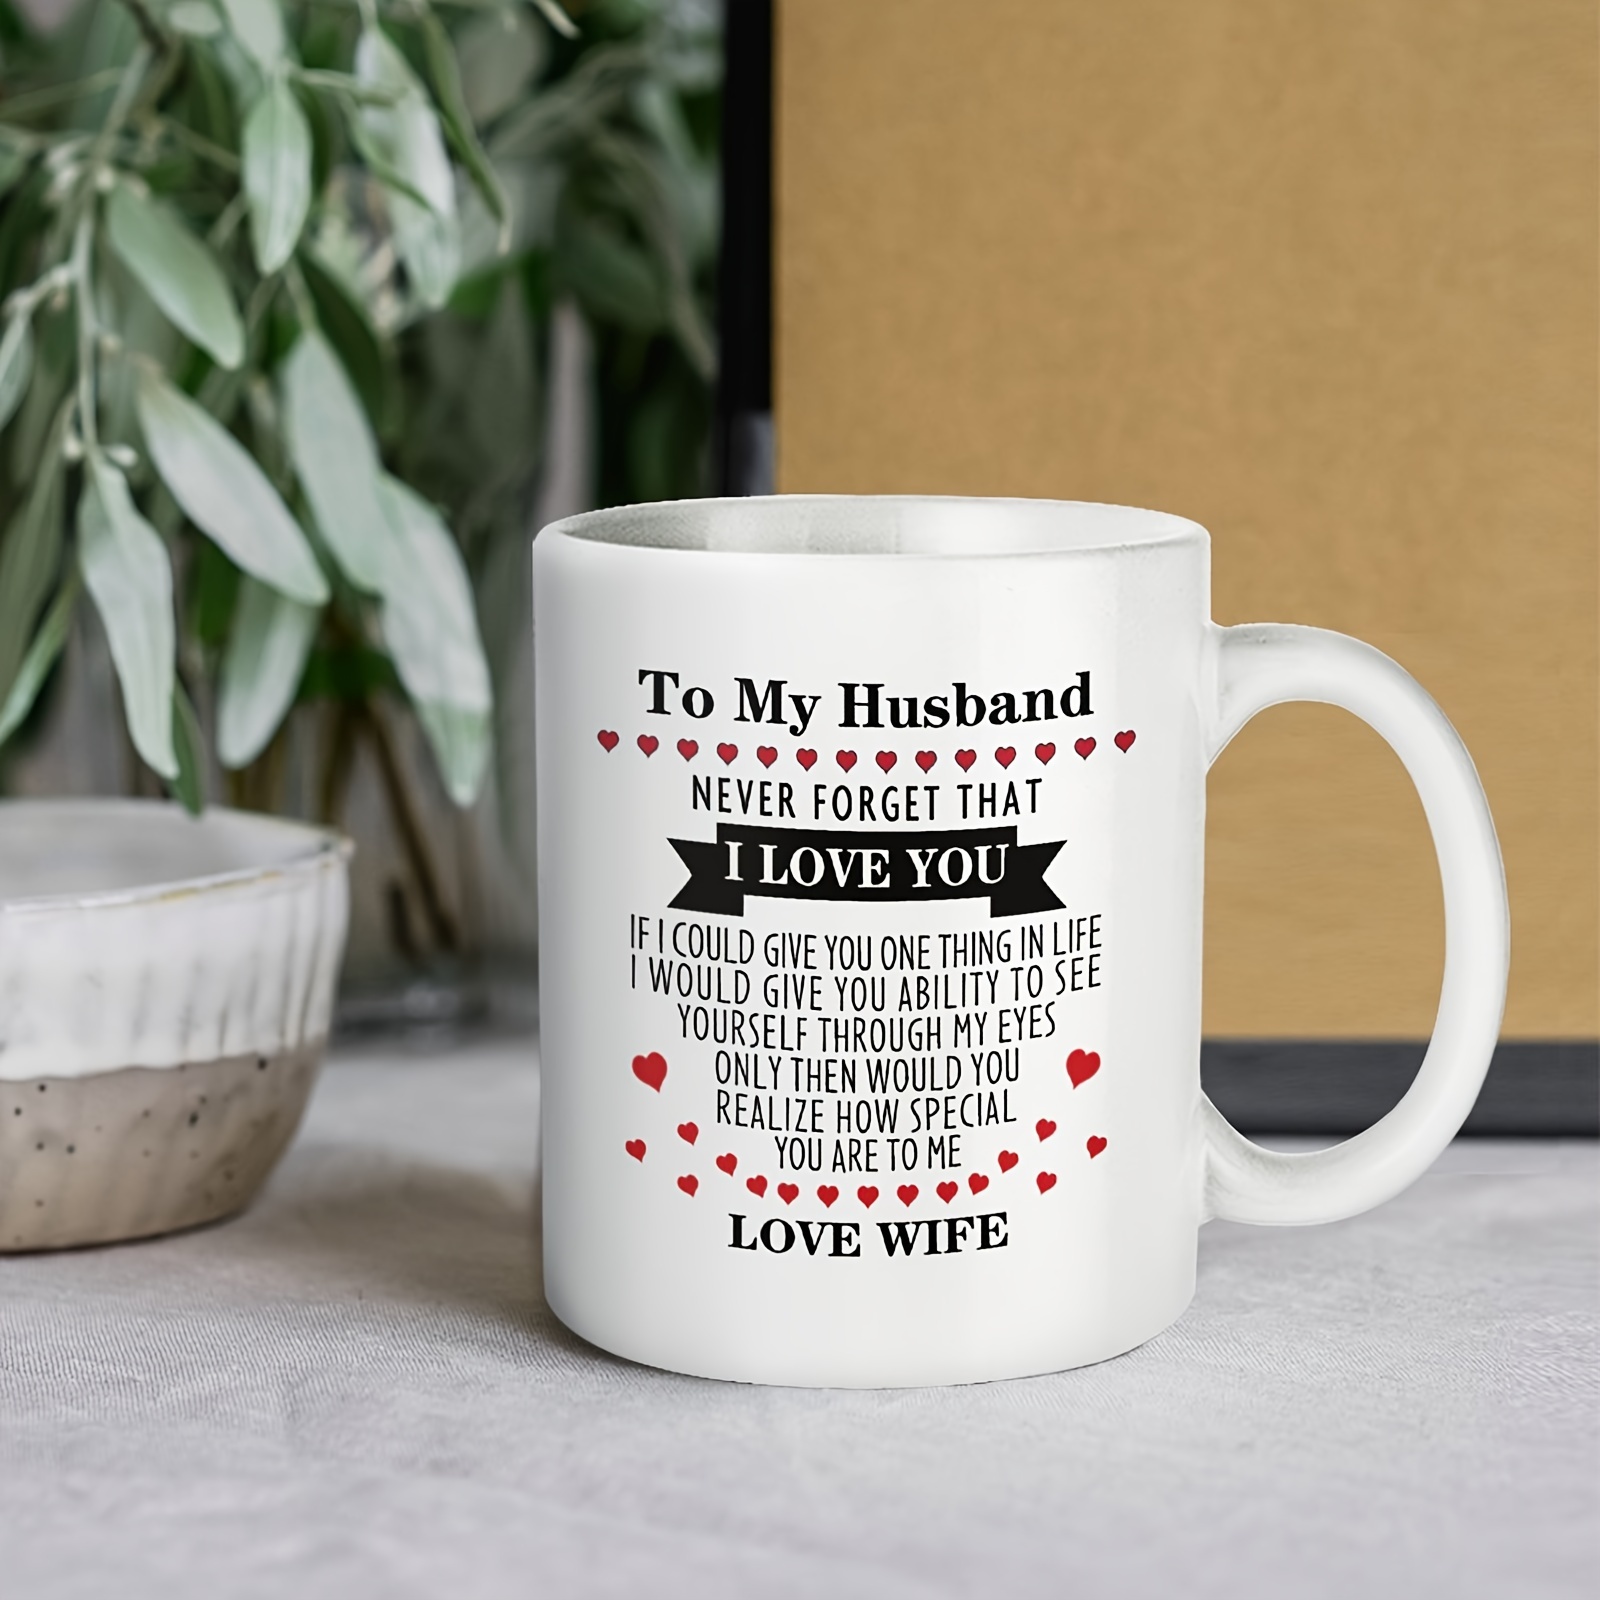  Kiss Cat - Taza de café hecha a mano para parejas, divertido  juego de tazas de cerámica para novia y novio, regalo a juego para  compromiso, boda y parejas casadas, aniversario